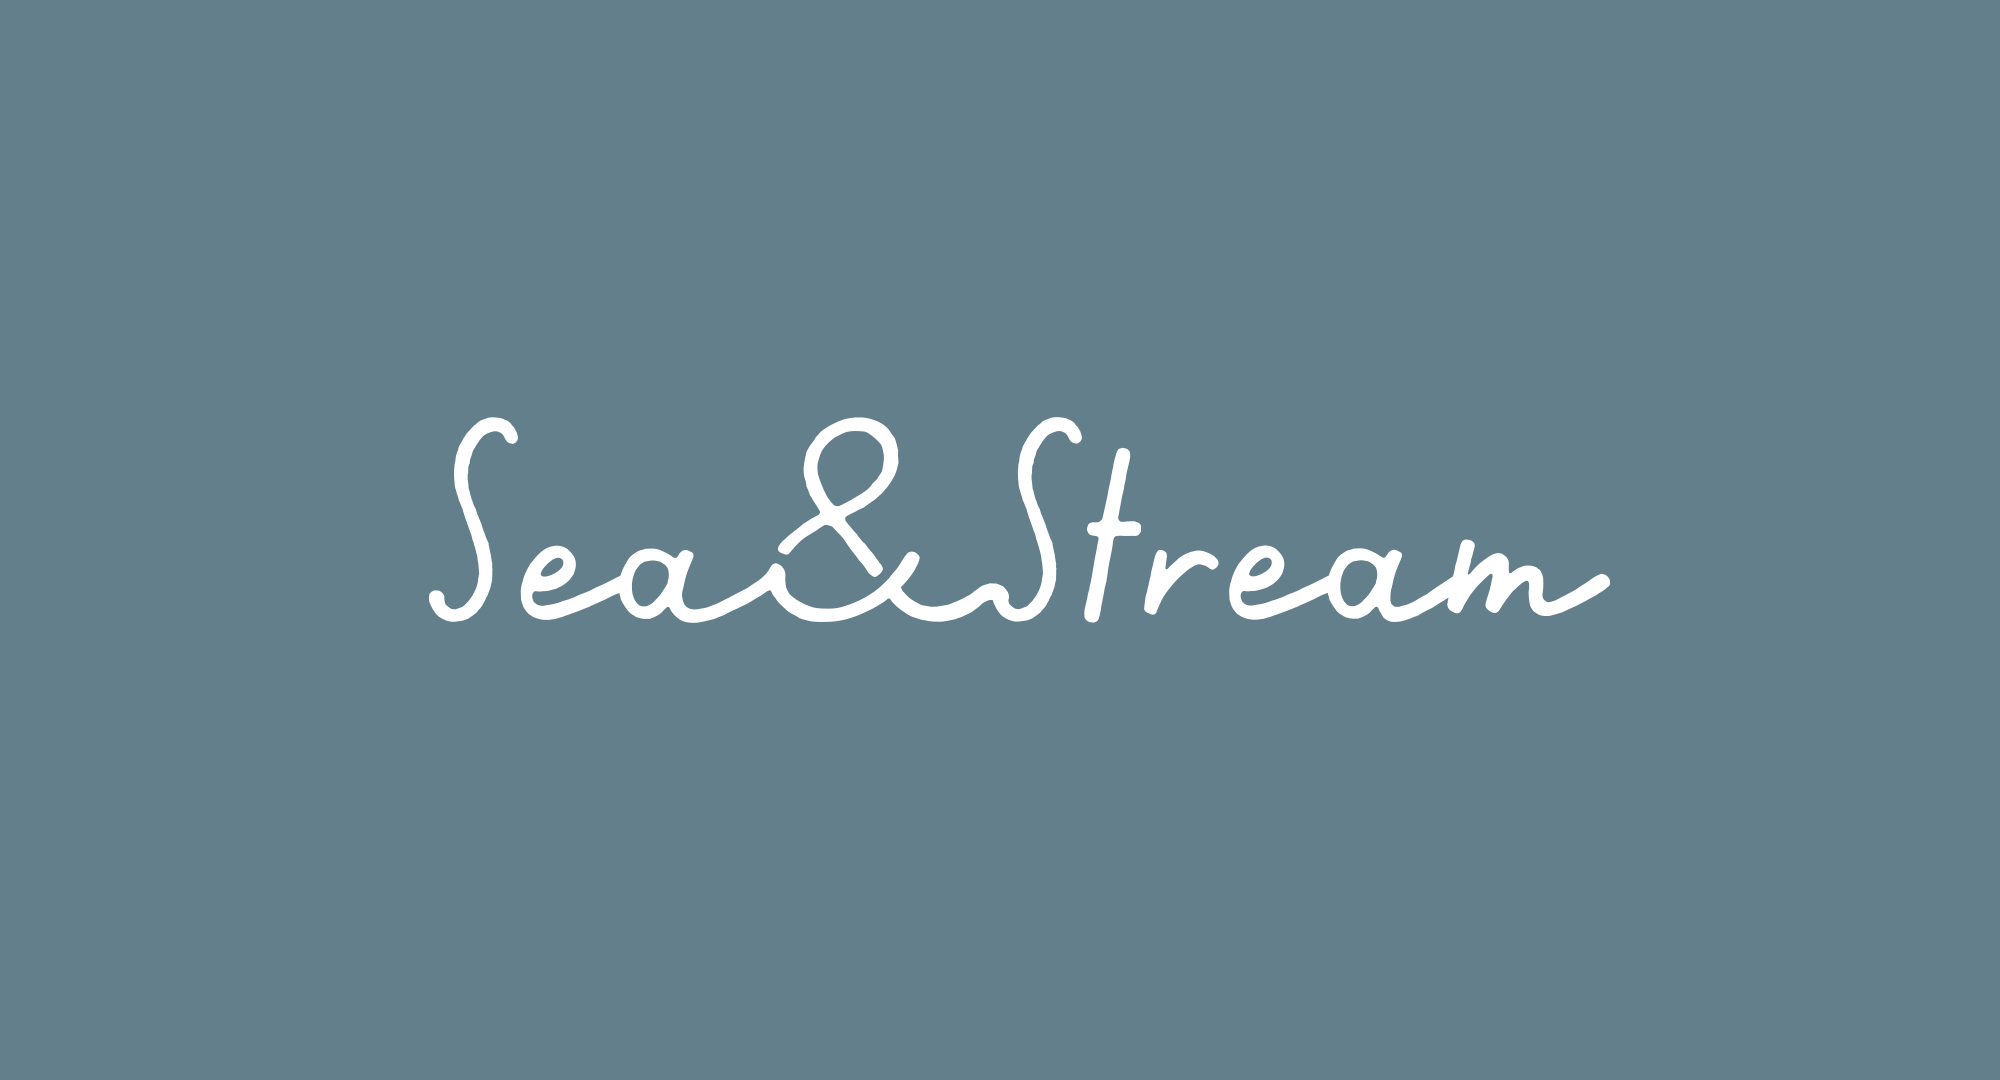 SeaandStream_logotype.png